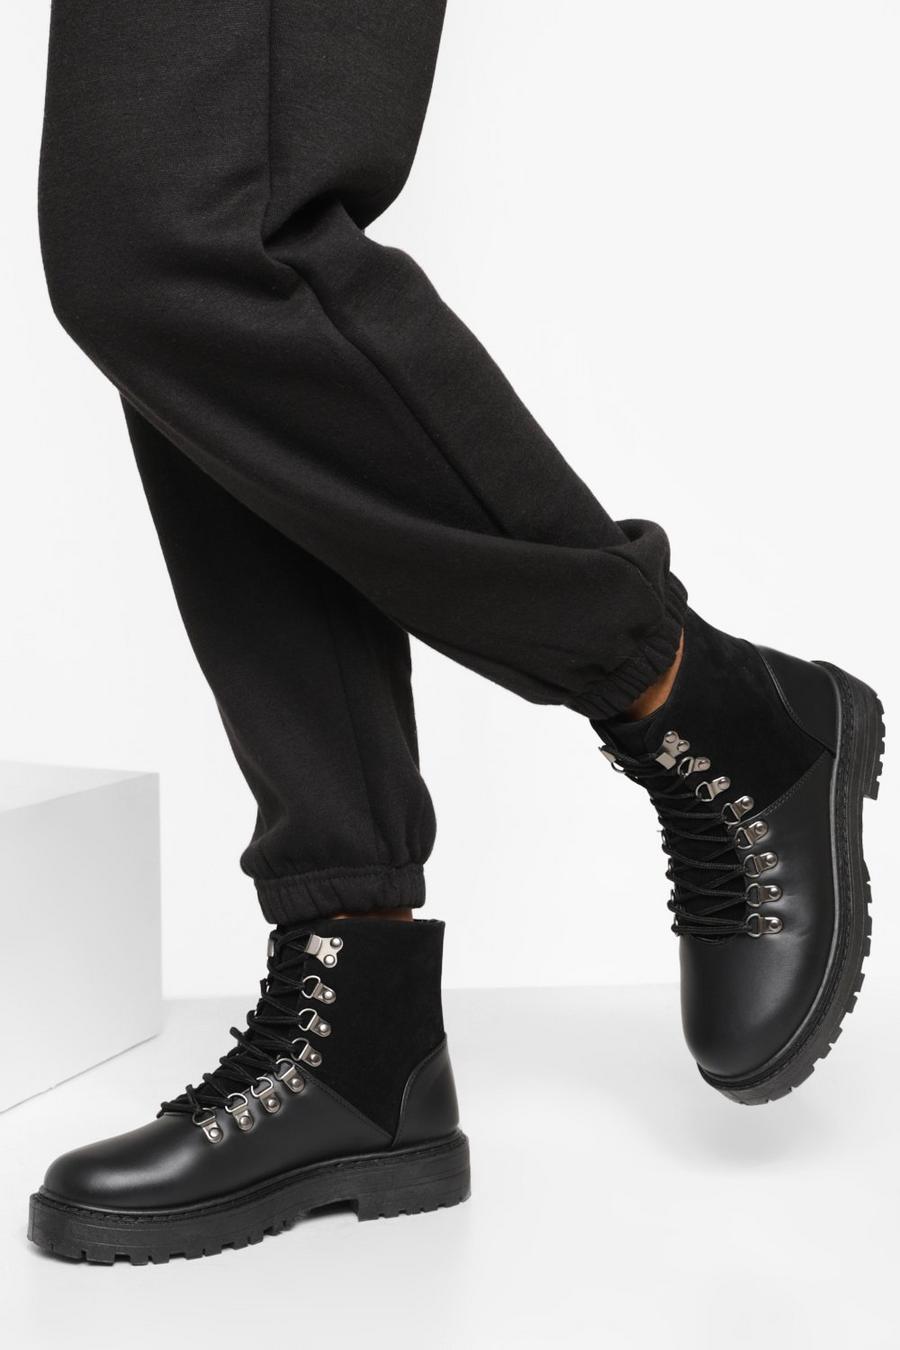 Scarponcini a calzata ampia con lacci e suola spessa, Black nero